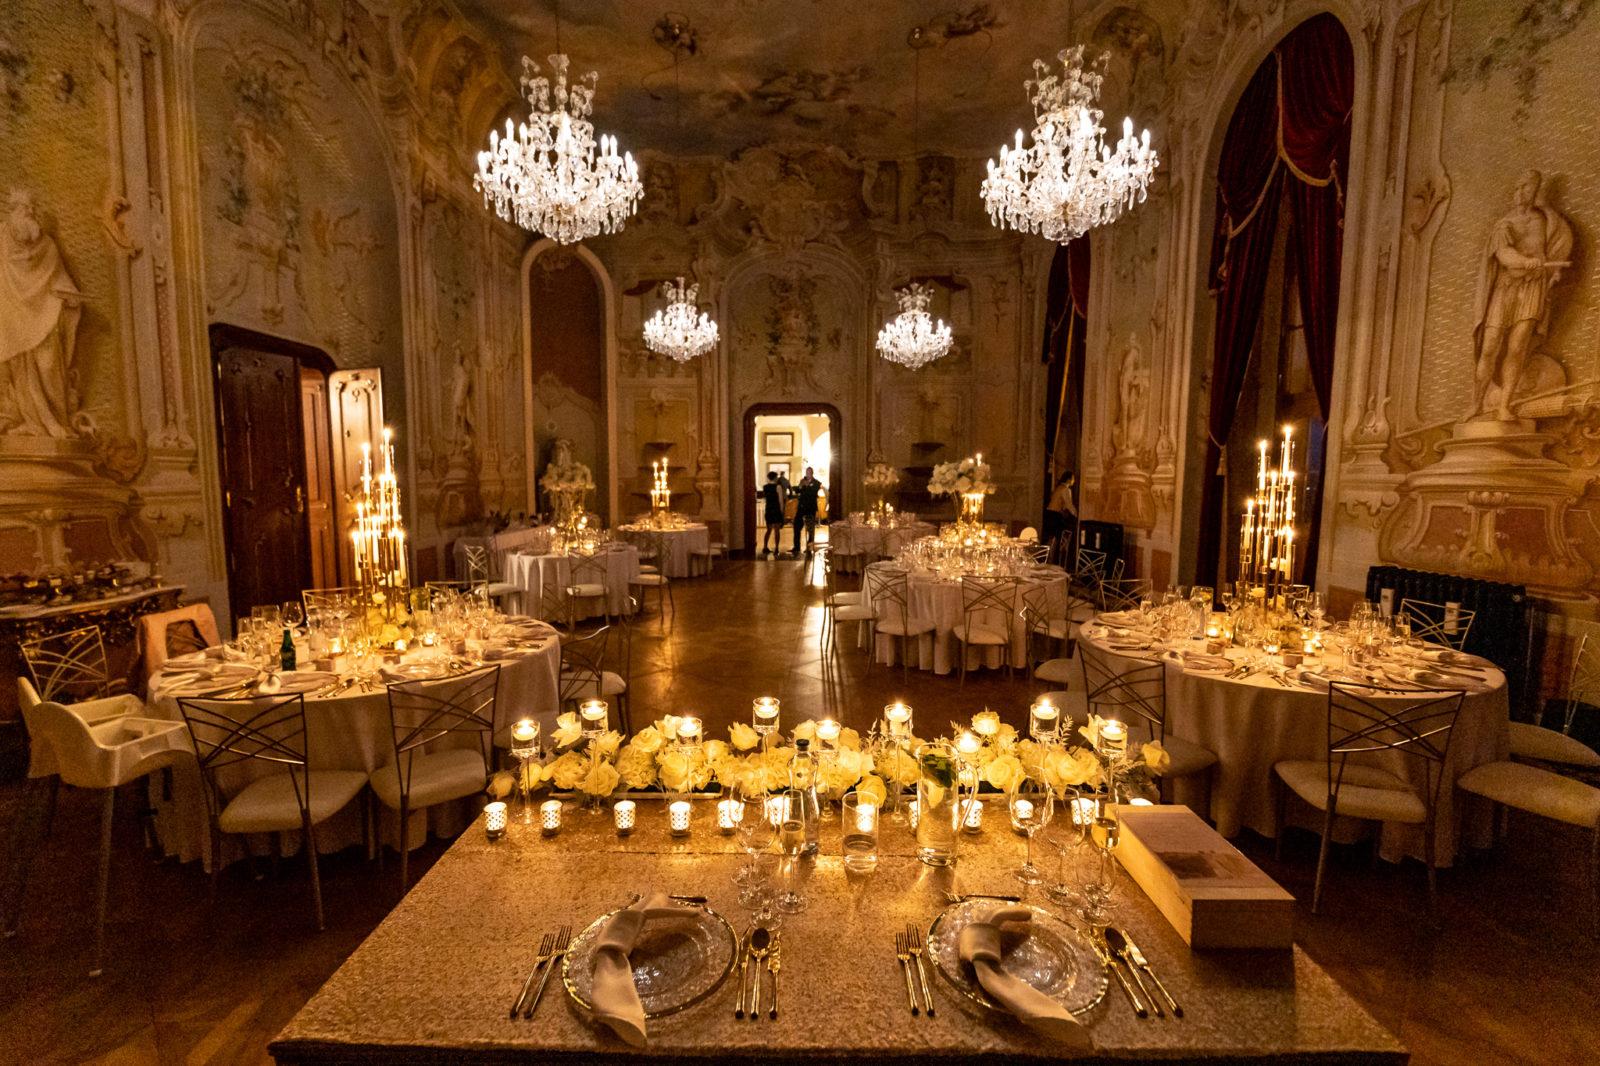 Kráľovská svadobná výzdoba hlavného stola pre dve osoby od svadobnej agentúry Eventia.